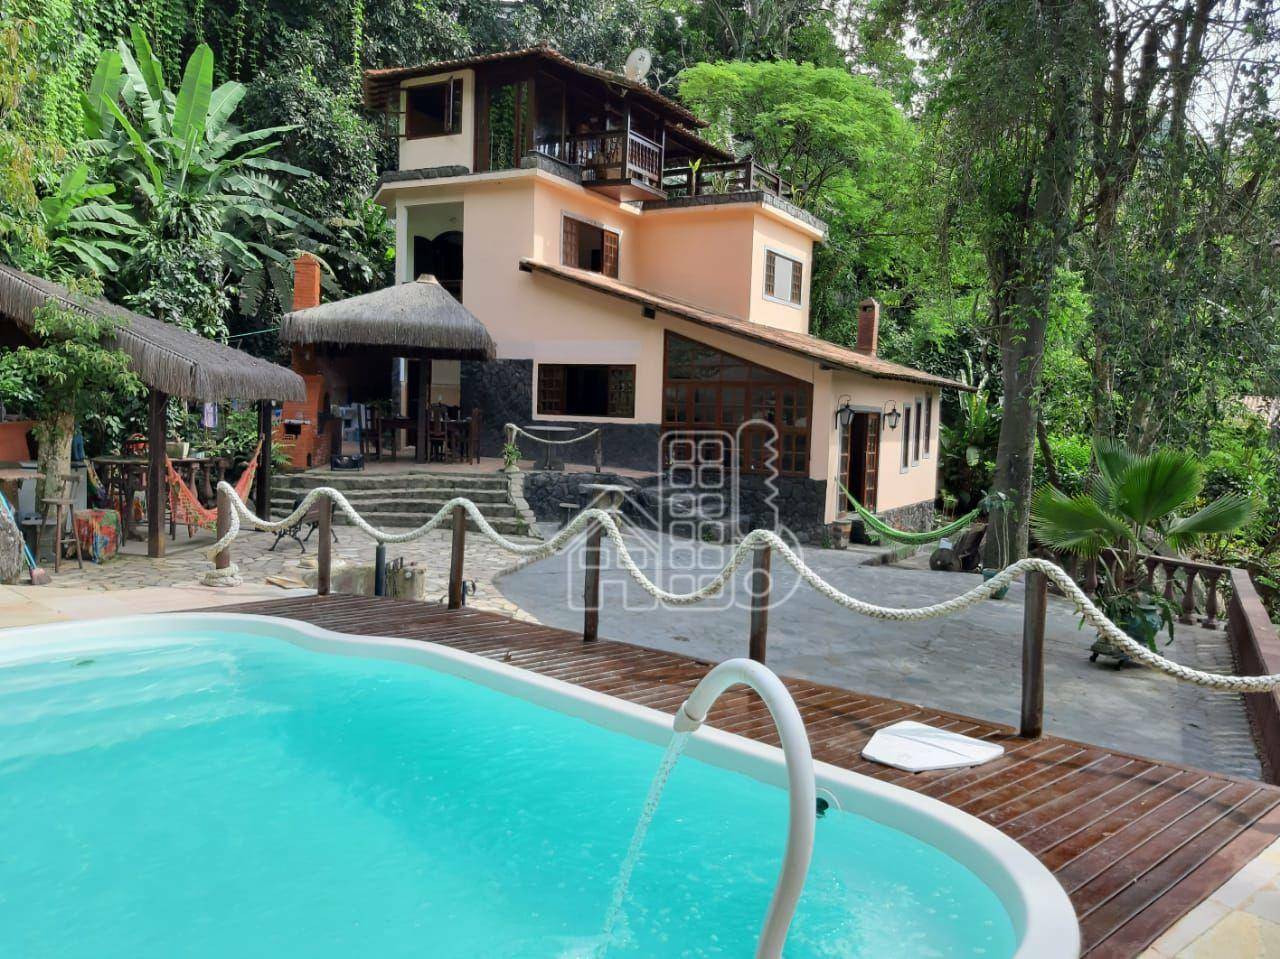 Casa com 5 dormitórios à venda, 380 m² por R$ 1.400.000,00 - Recanto de Itaipuaçu - Maricá/RJ